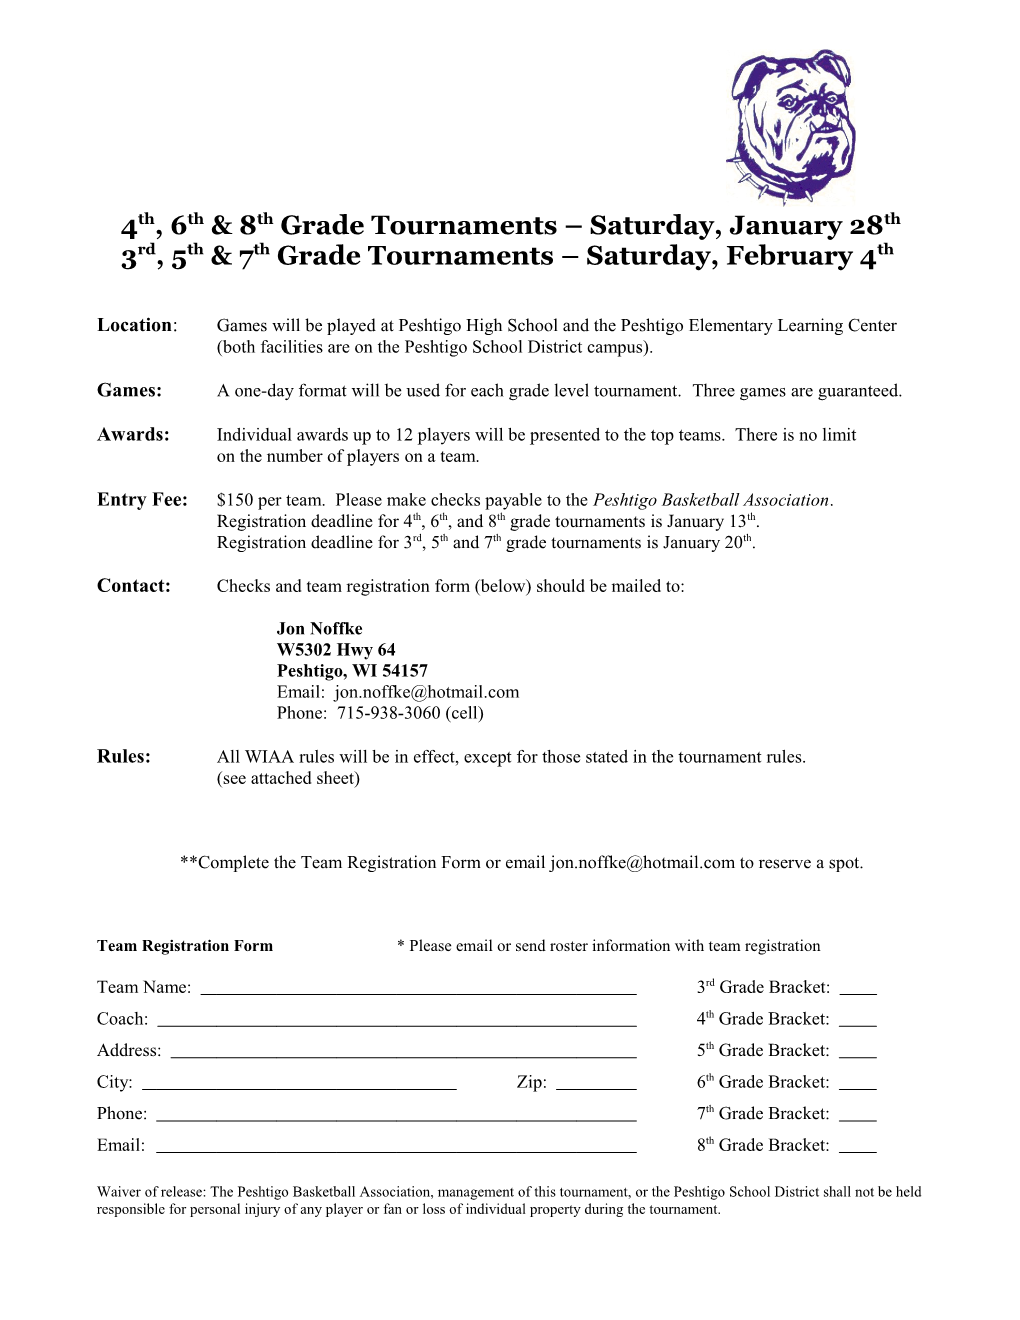 3Rd, 5Th & 7Th Grade Tournaments Saturday, February 4Th